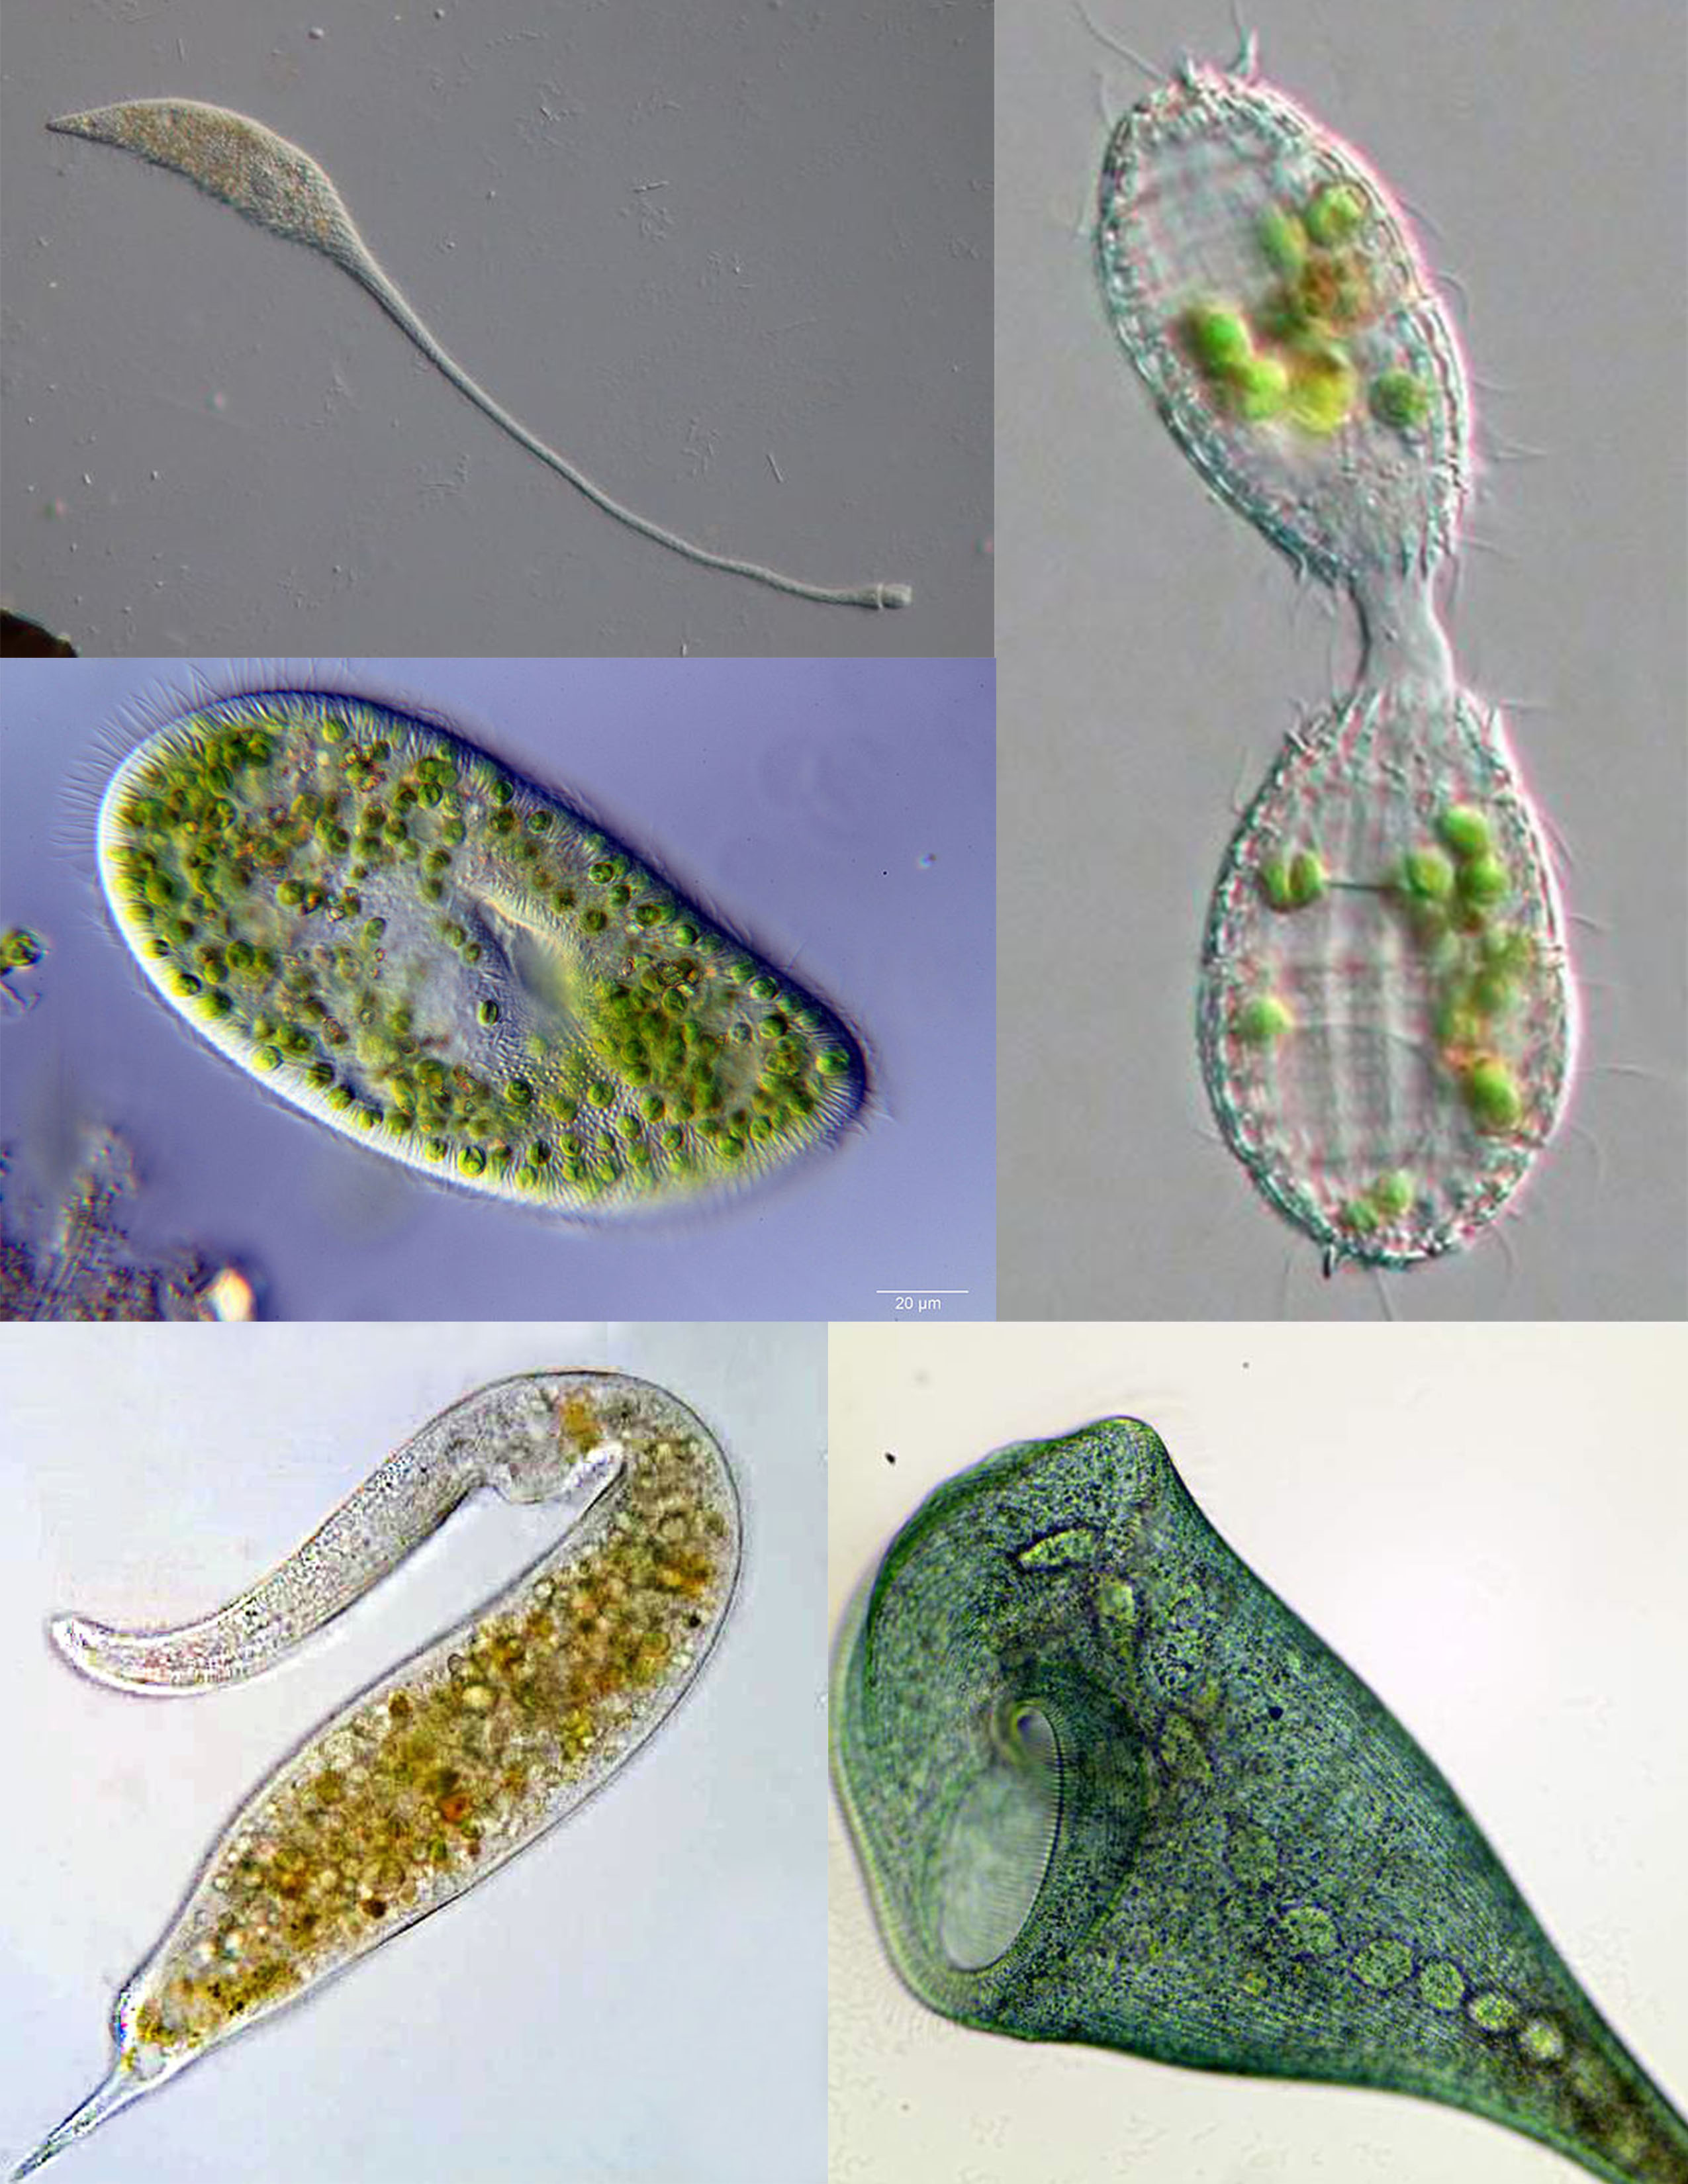 Composite image of various ciliates: Lacrymaria olor, Paramecium bursaria, Coleps, Dileptus, Stentor coeruleus.